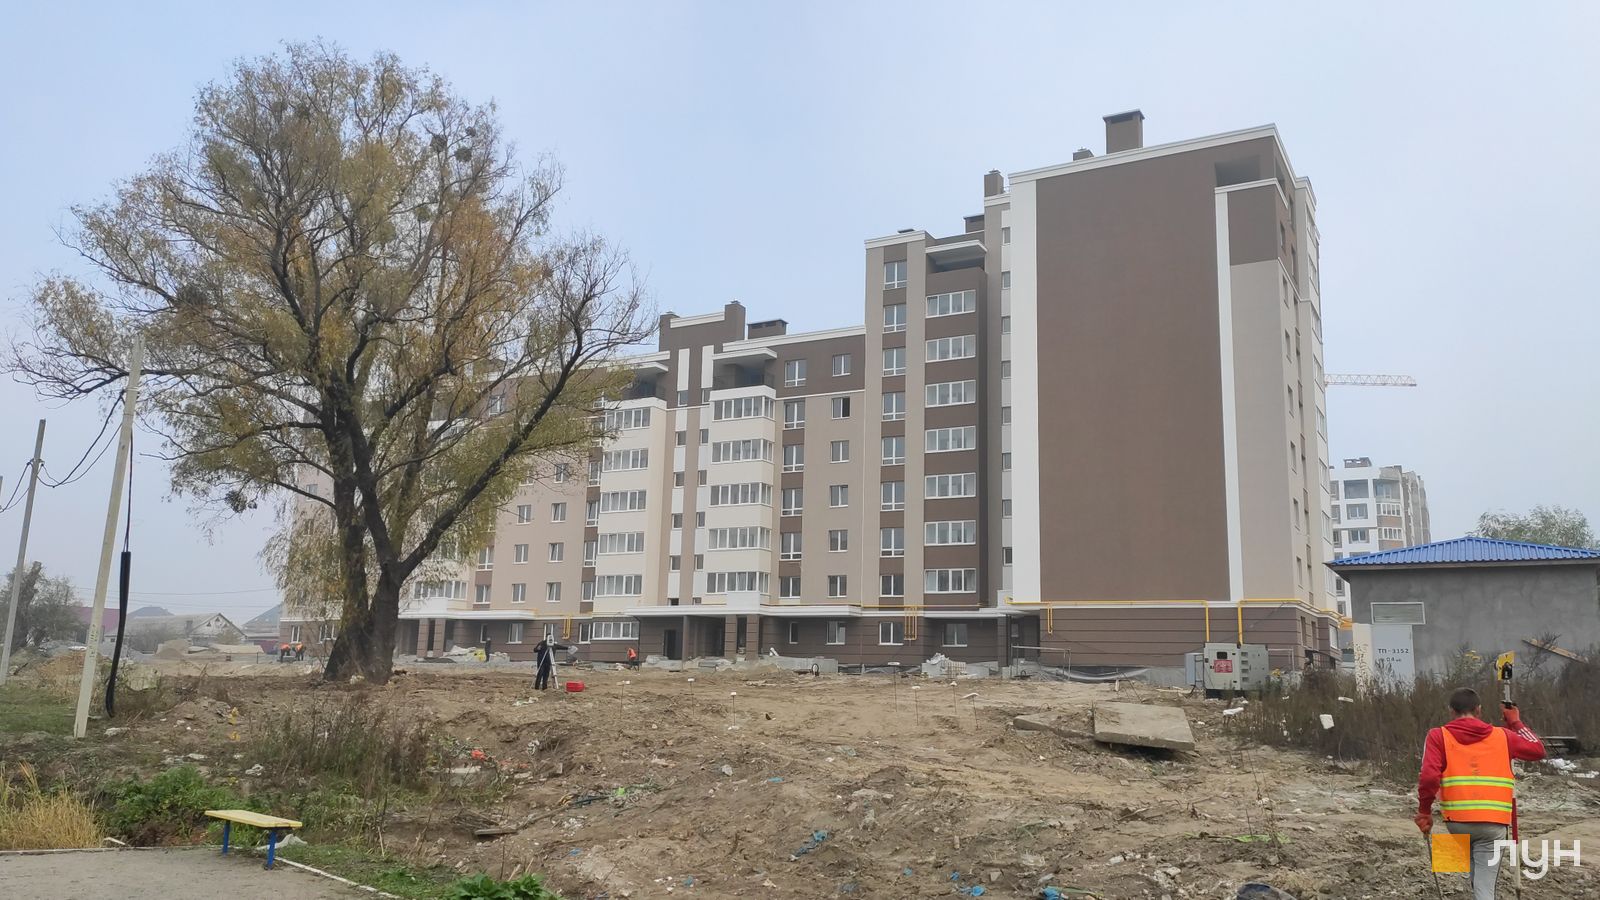 Моніторинг будівництва ЖК Озерний Гай (Гатне) - Ракурс 14, октябрь 2019